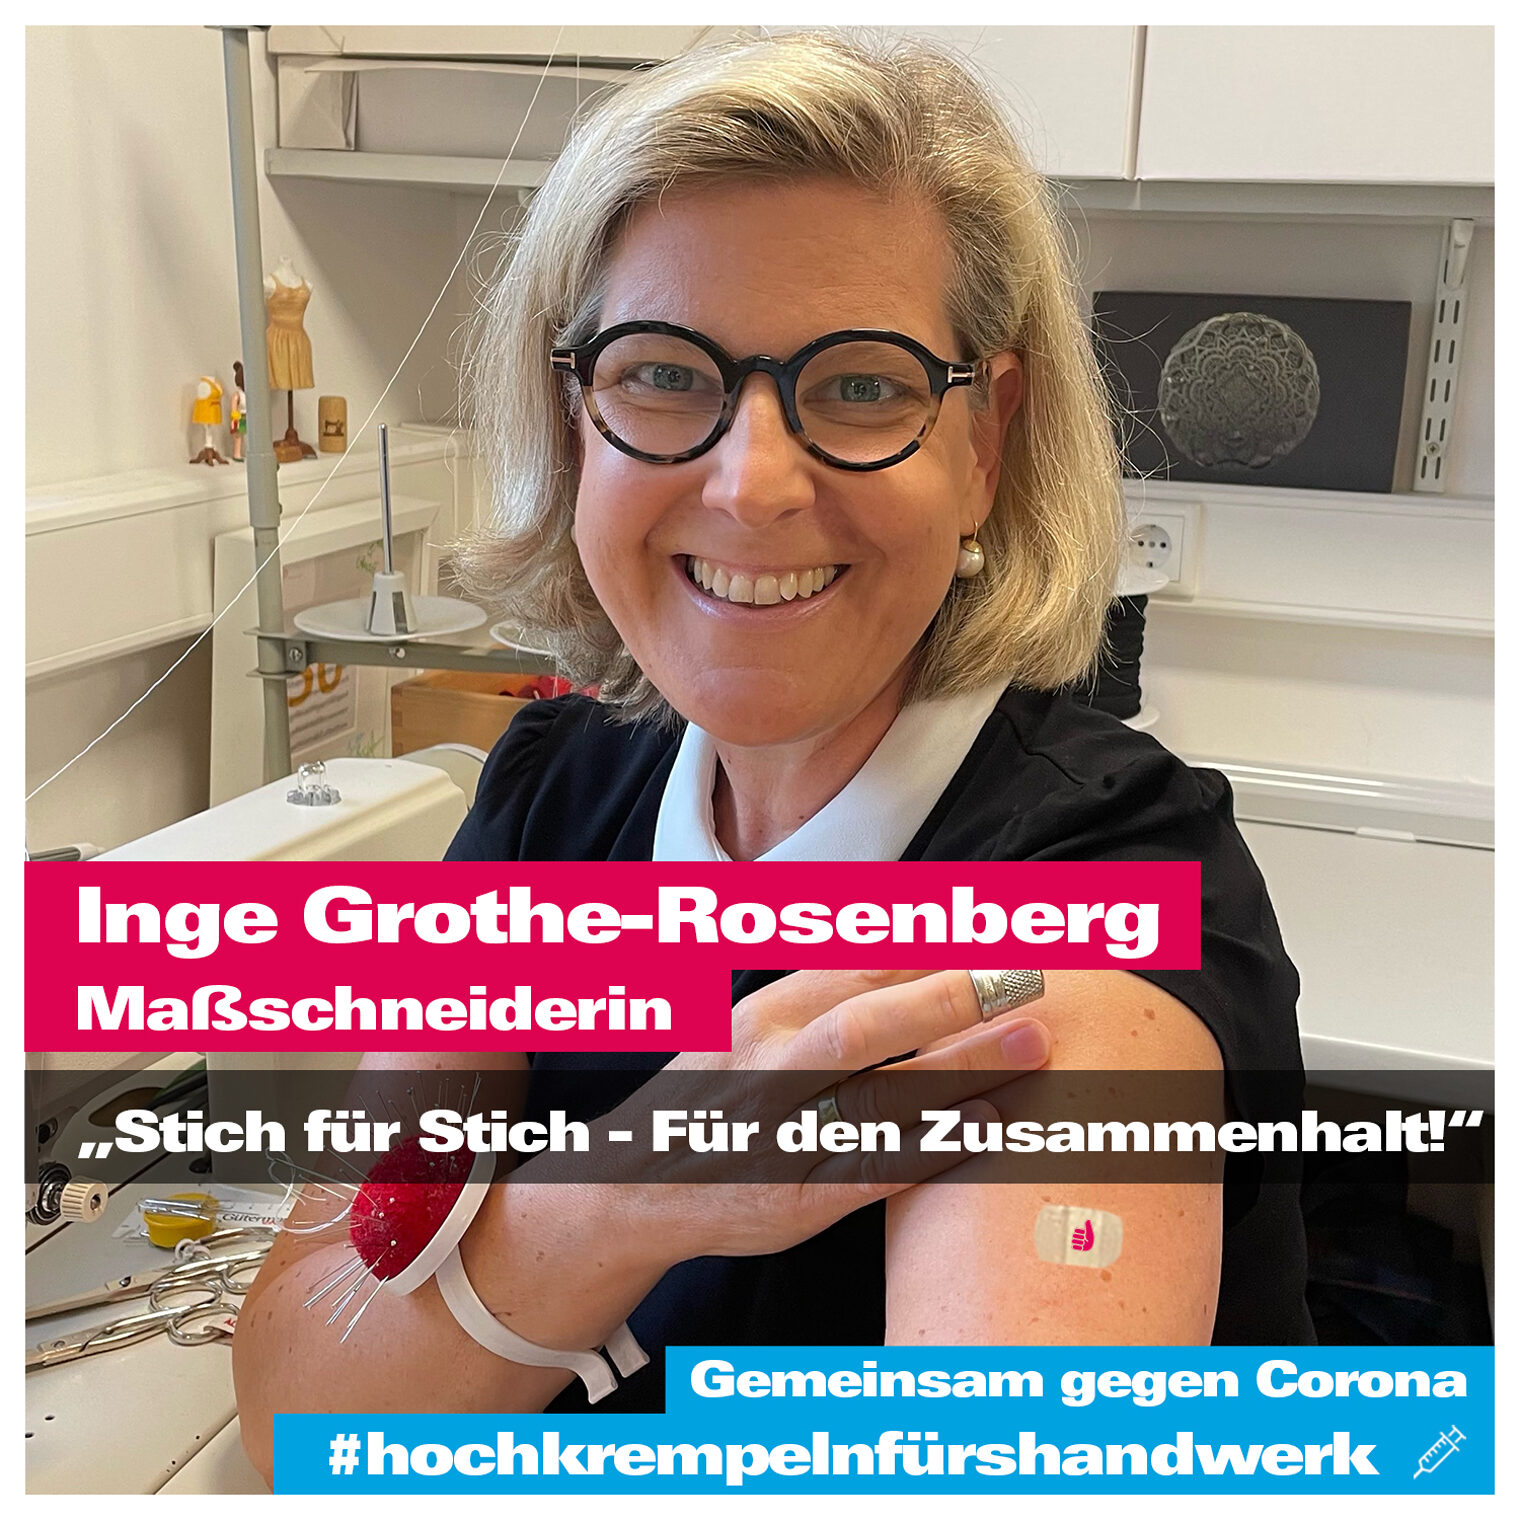 Inge Grothe-Rosenberg